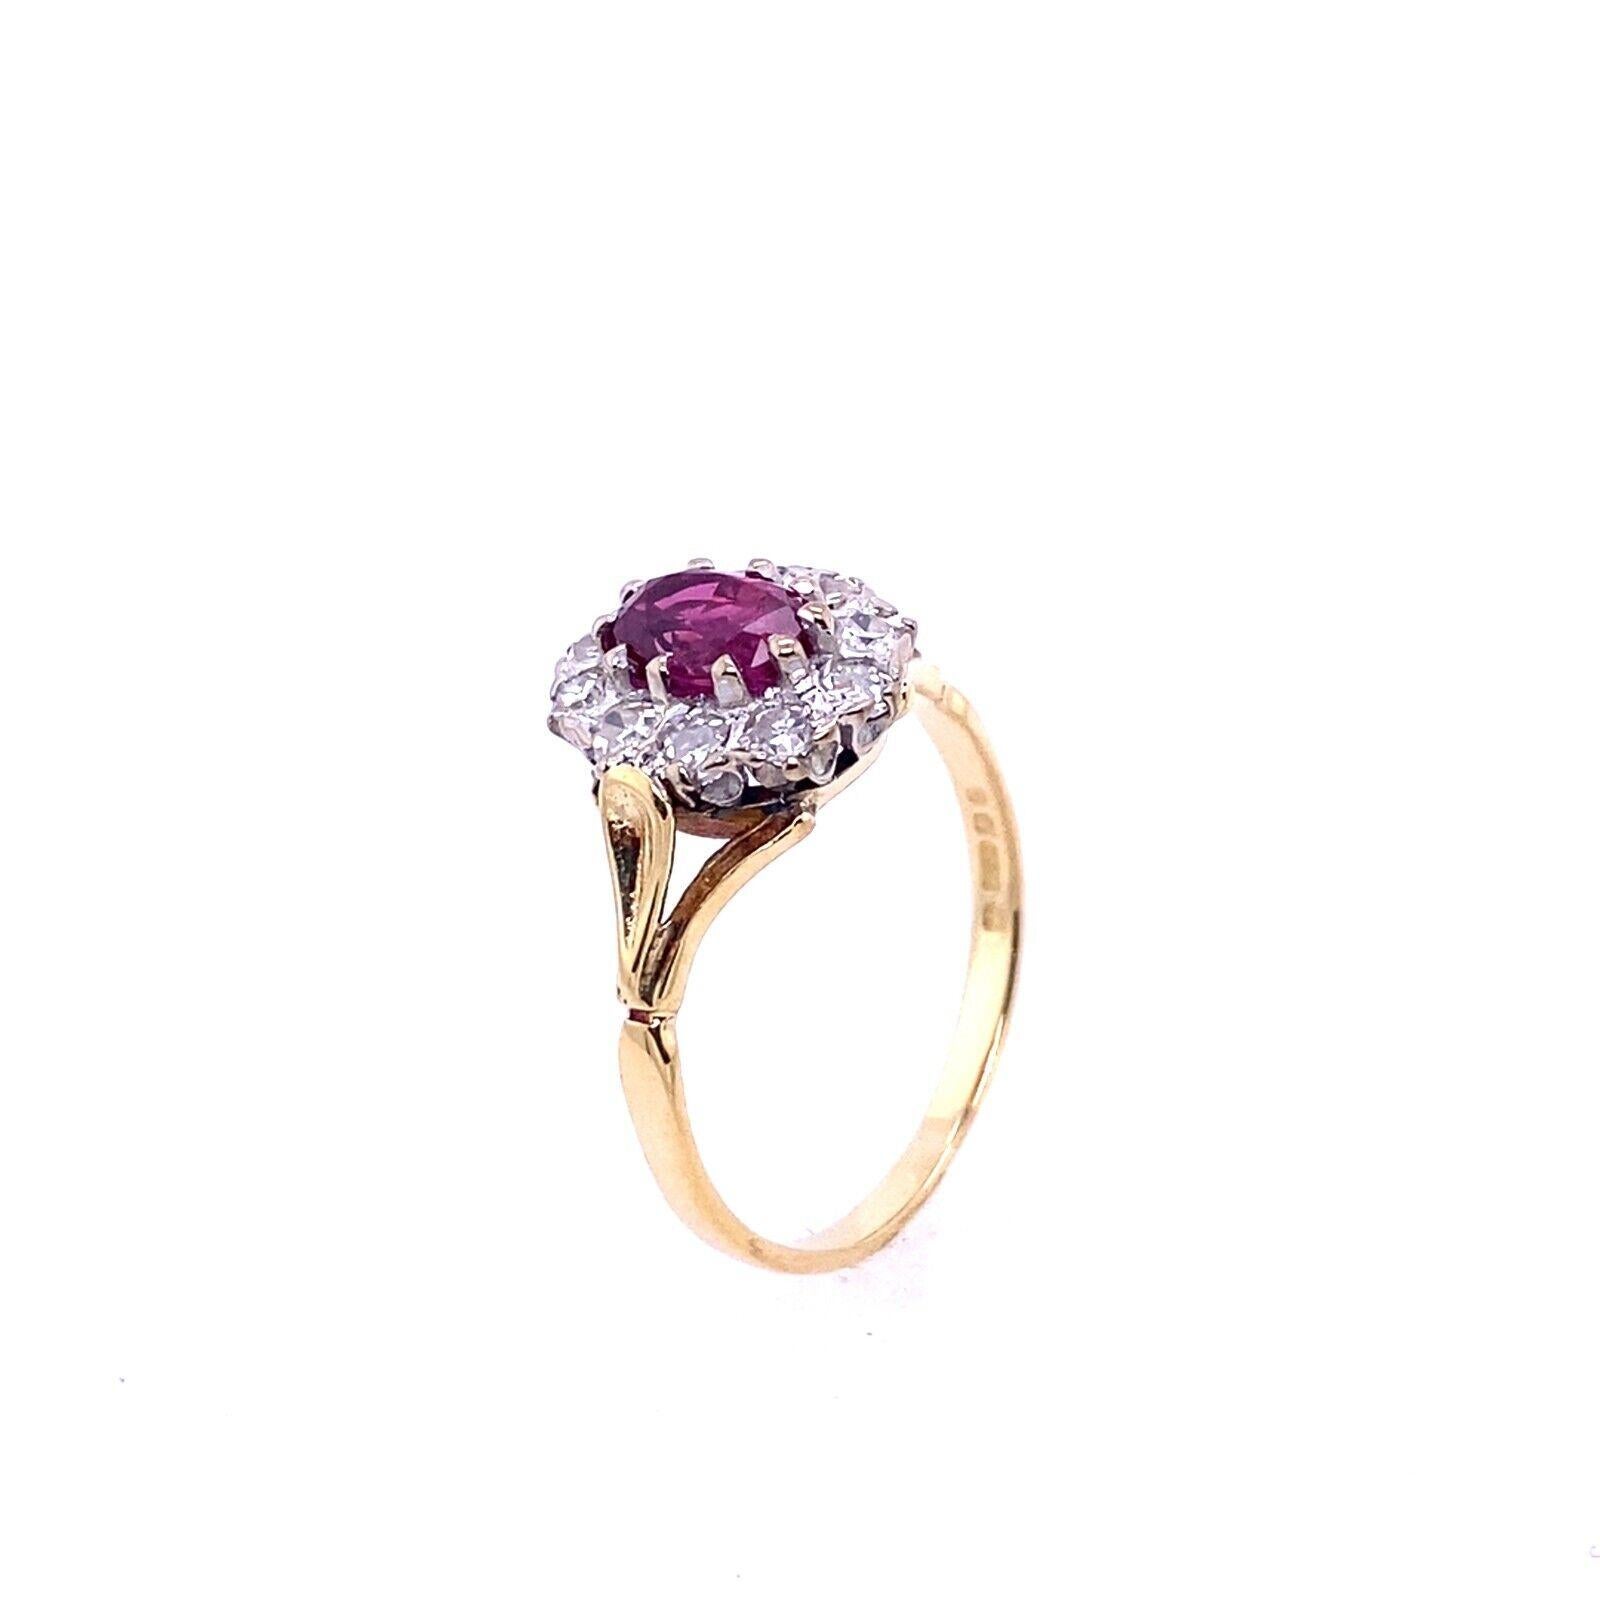 Dieser klassische Vintage-Ring ist mit einem wunderschönen Rubin im Ovalschliff besetzt, der von einer Gruppe kleinerer Diamanten umgeben ist. Mit einem Rubingewicht von insgesamt 0,40 ct und einem Diamantengewicht von 0,35 ct ist dieser Ring ein